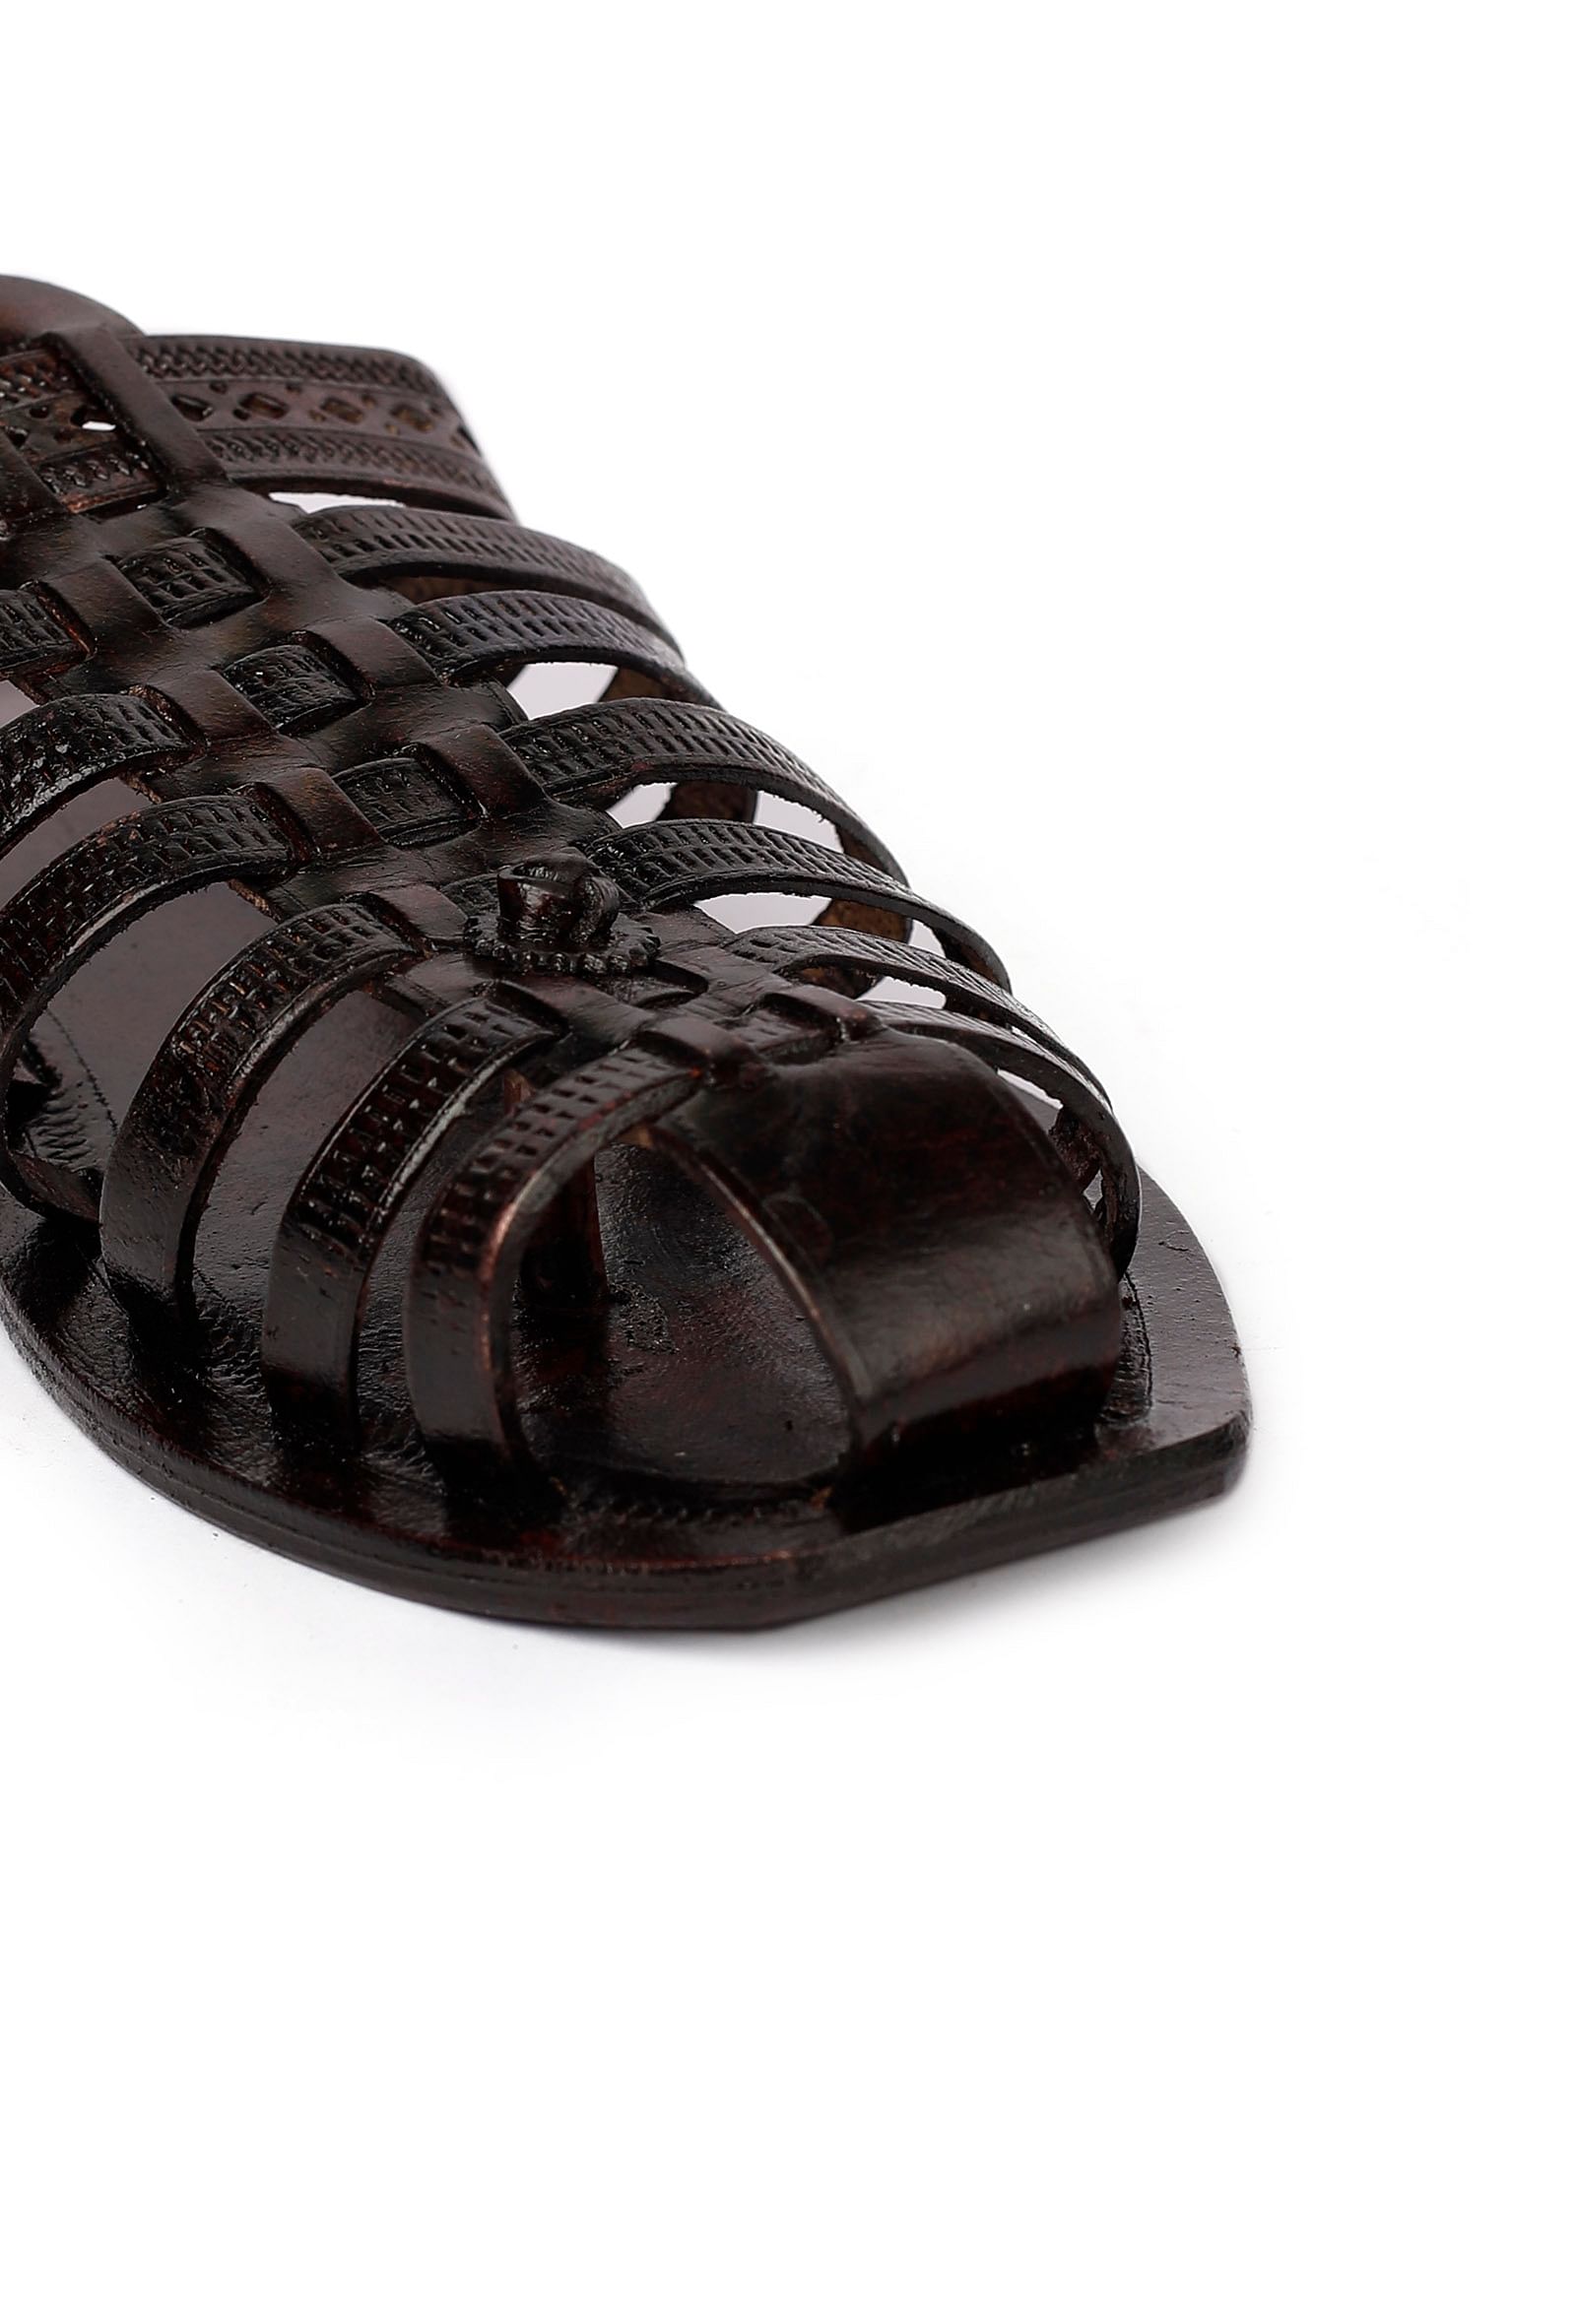 Onyx Black Braided  Pure Leather Kolhapuri Sandals